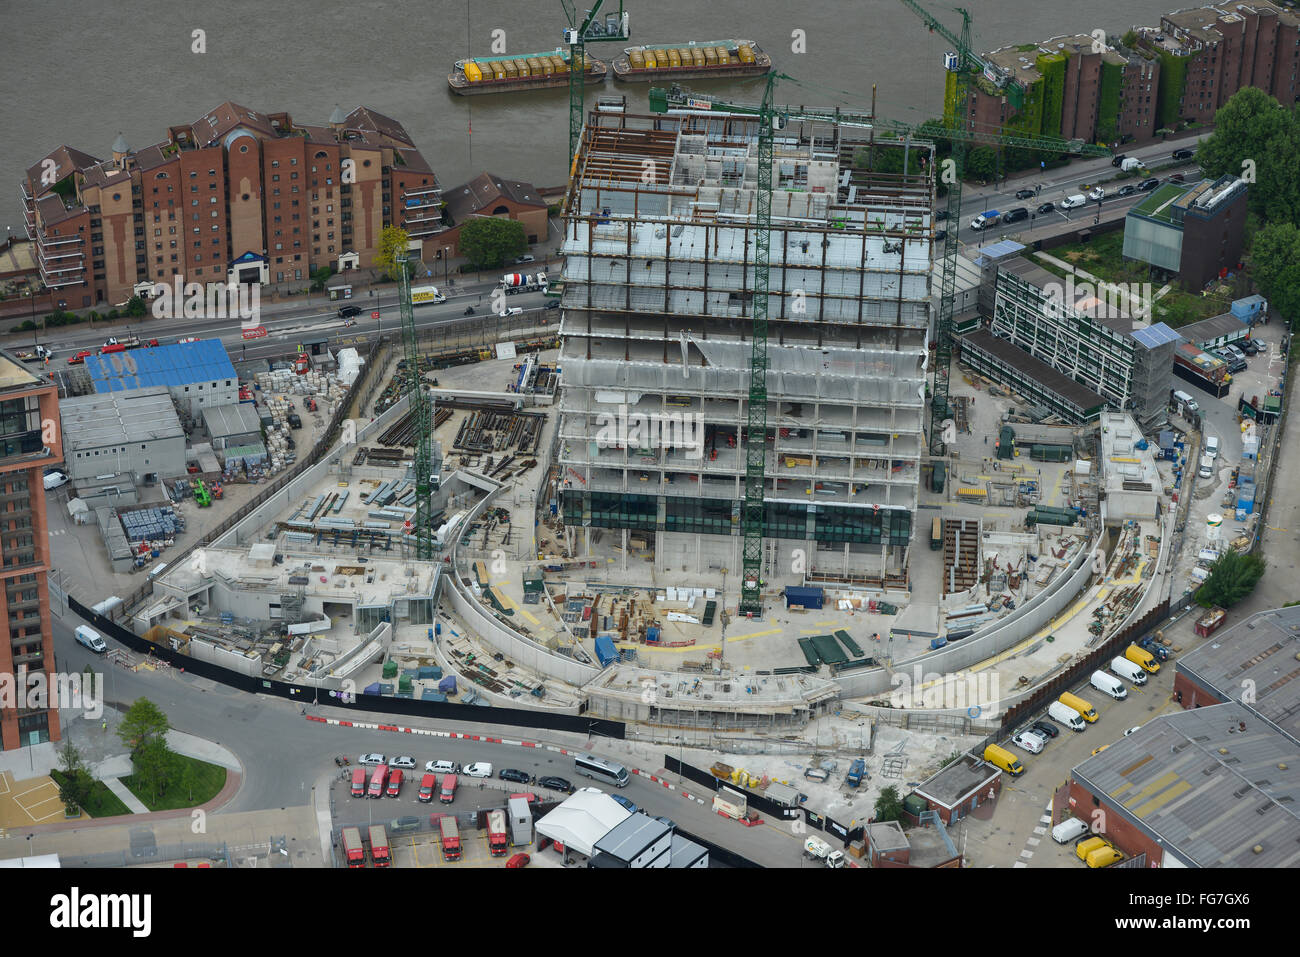 Une vue aérienne montrant la construction de la nouvelle ambassade américaine à neuf Elms, Londres Banque D'Images